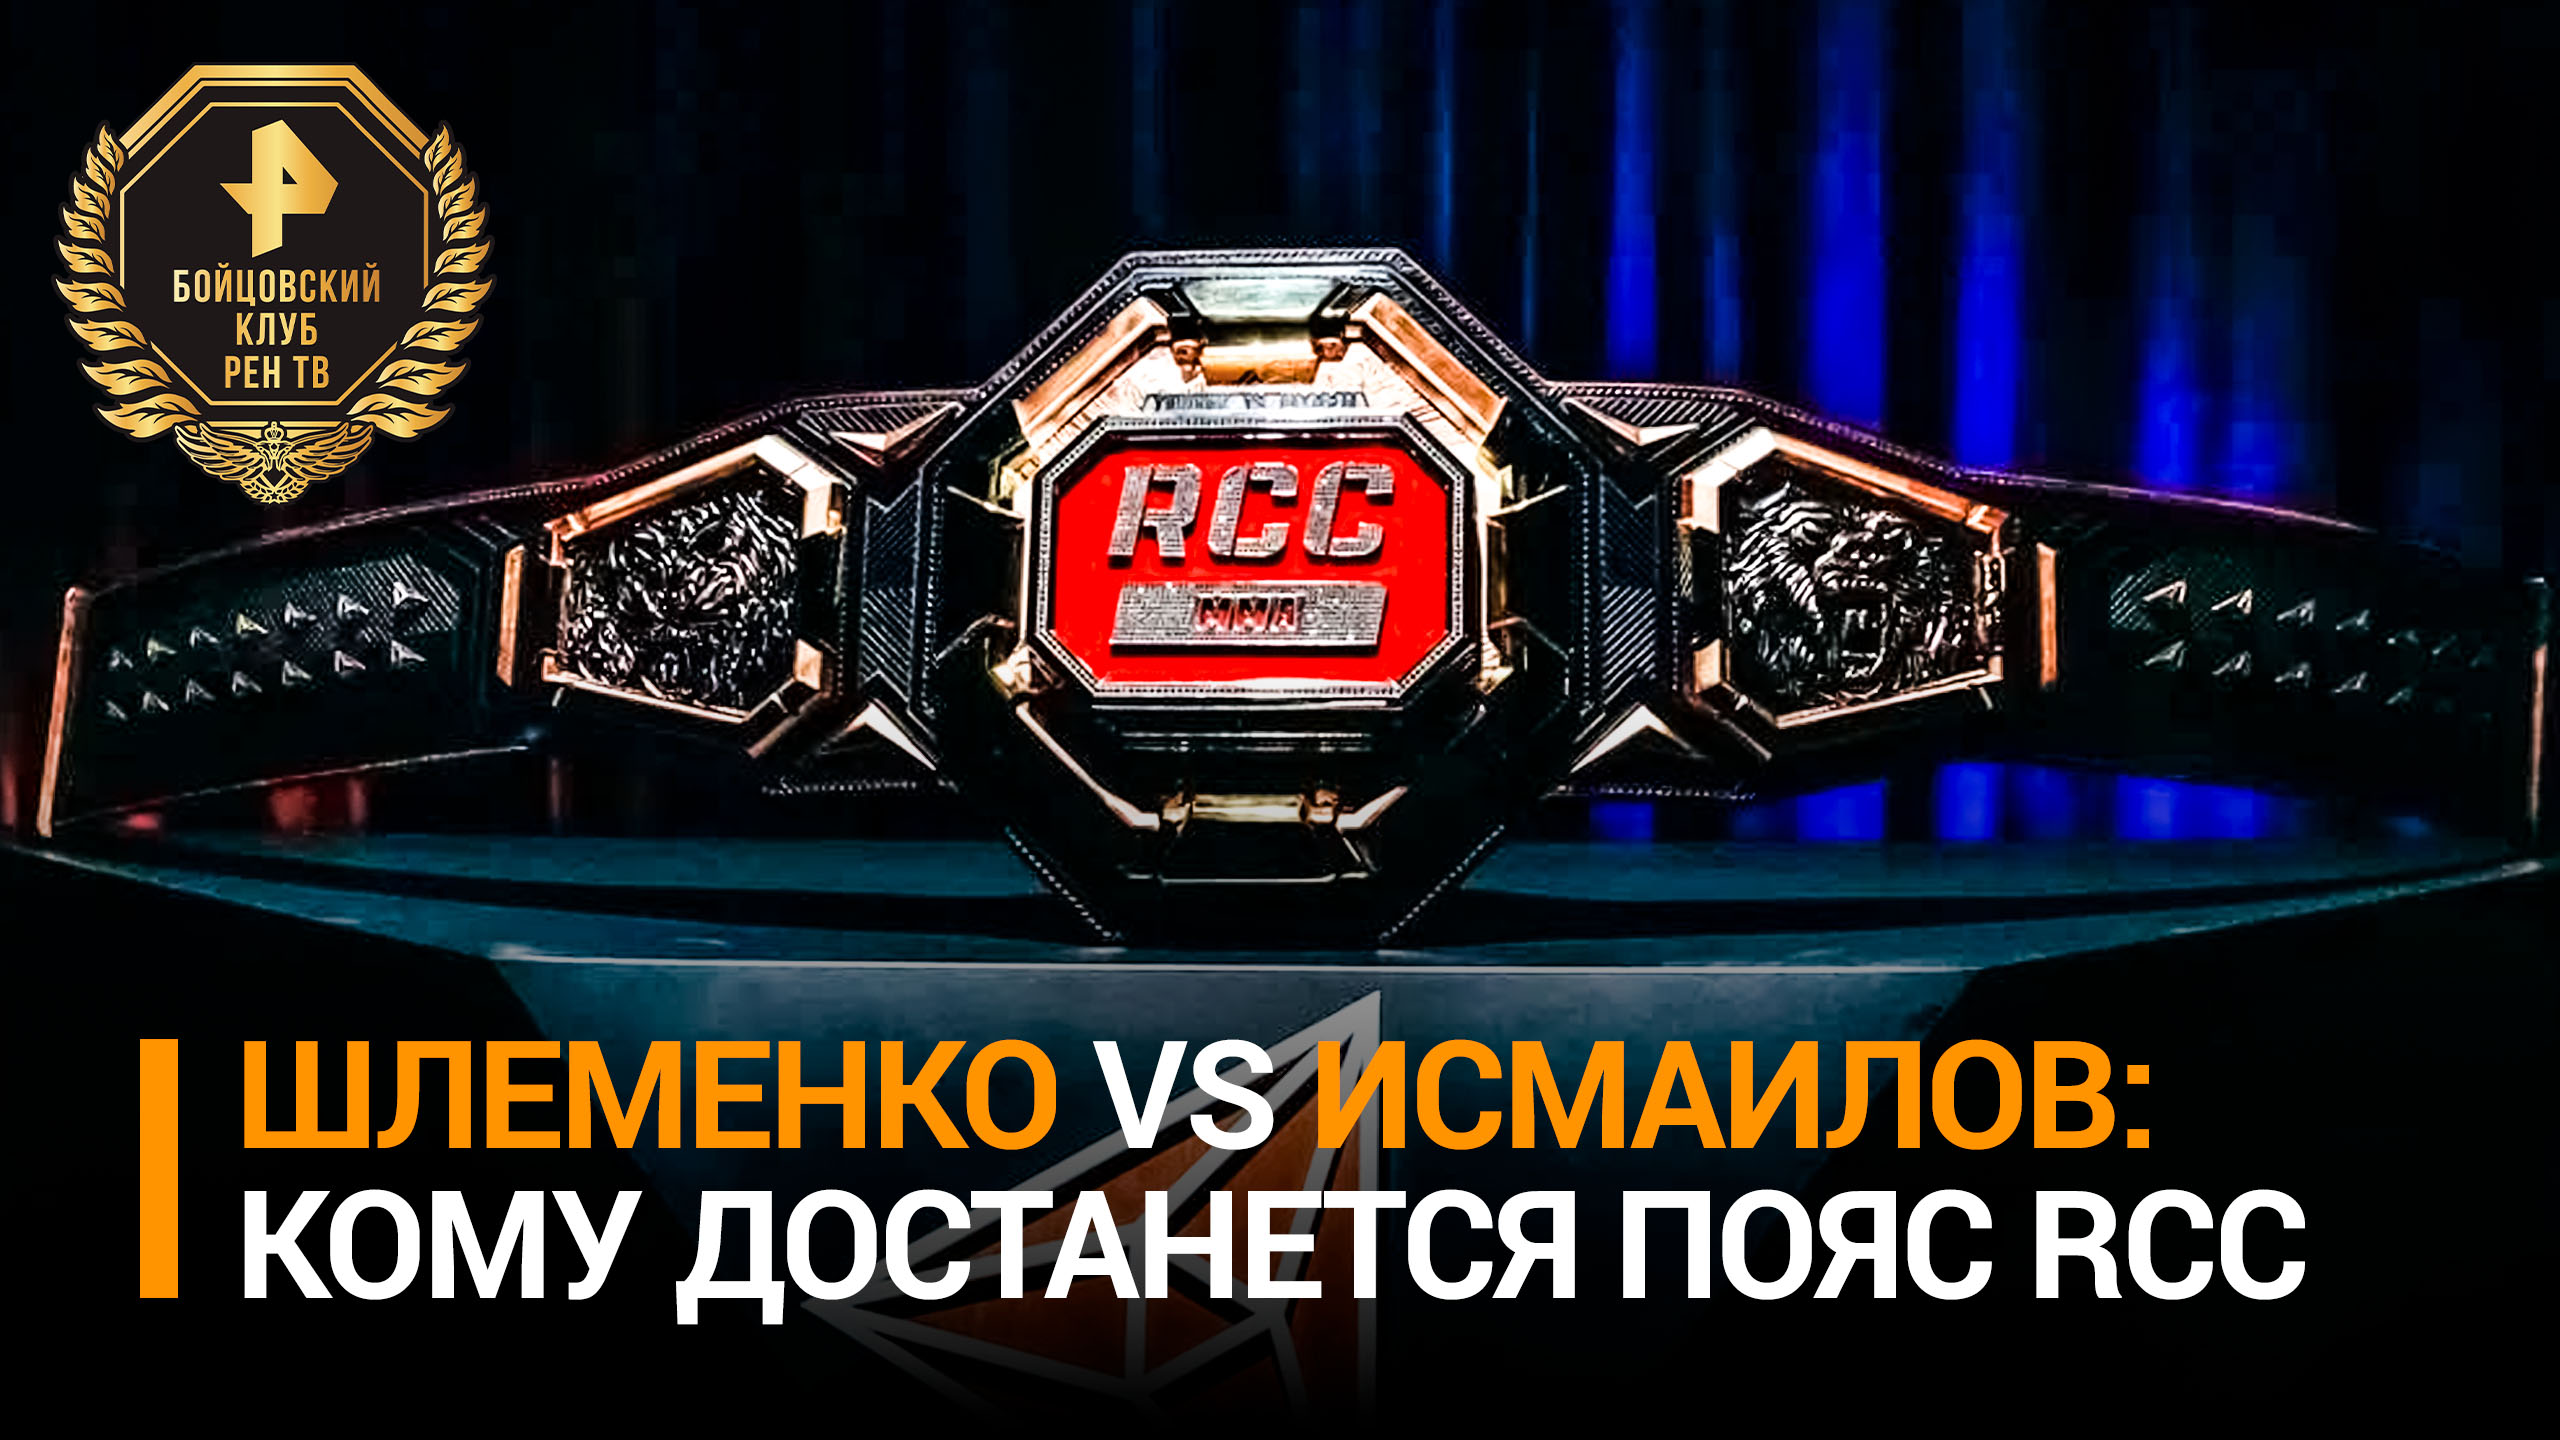 Соперникам Шлеменко и Исмаилову показали пояс, за который они будут сражаться / Бойцовский клуб РЕН